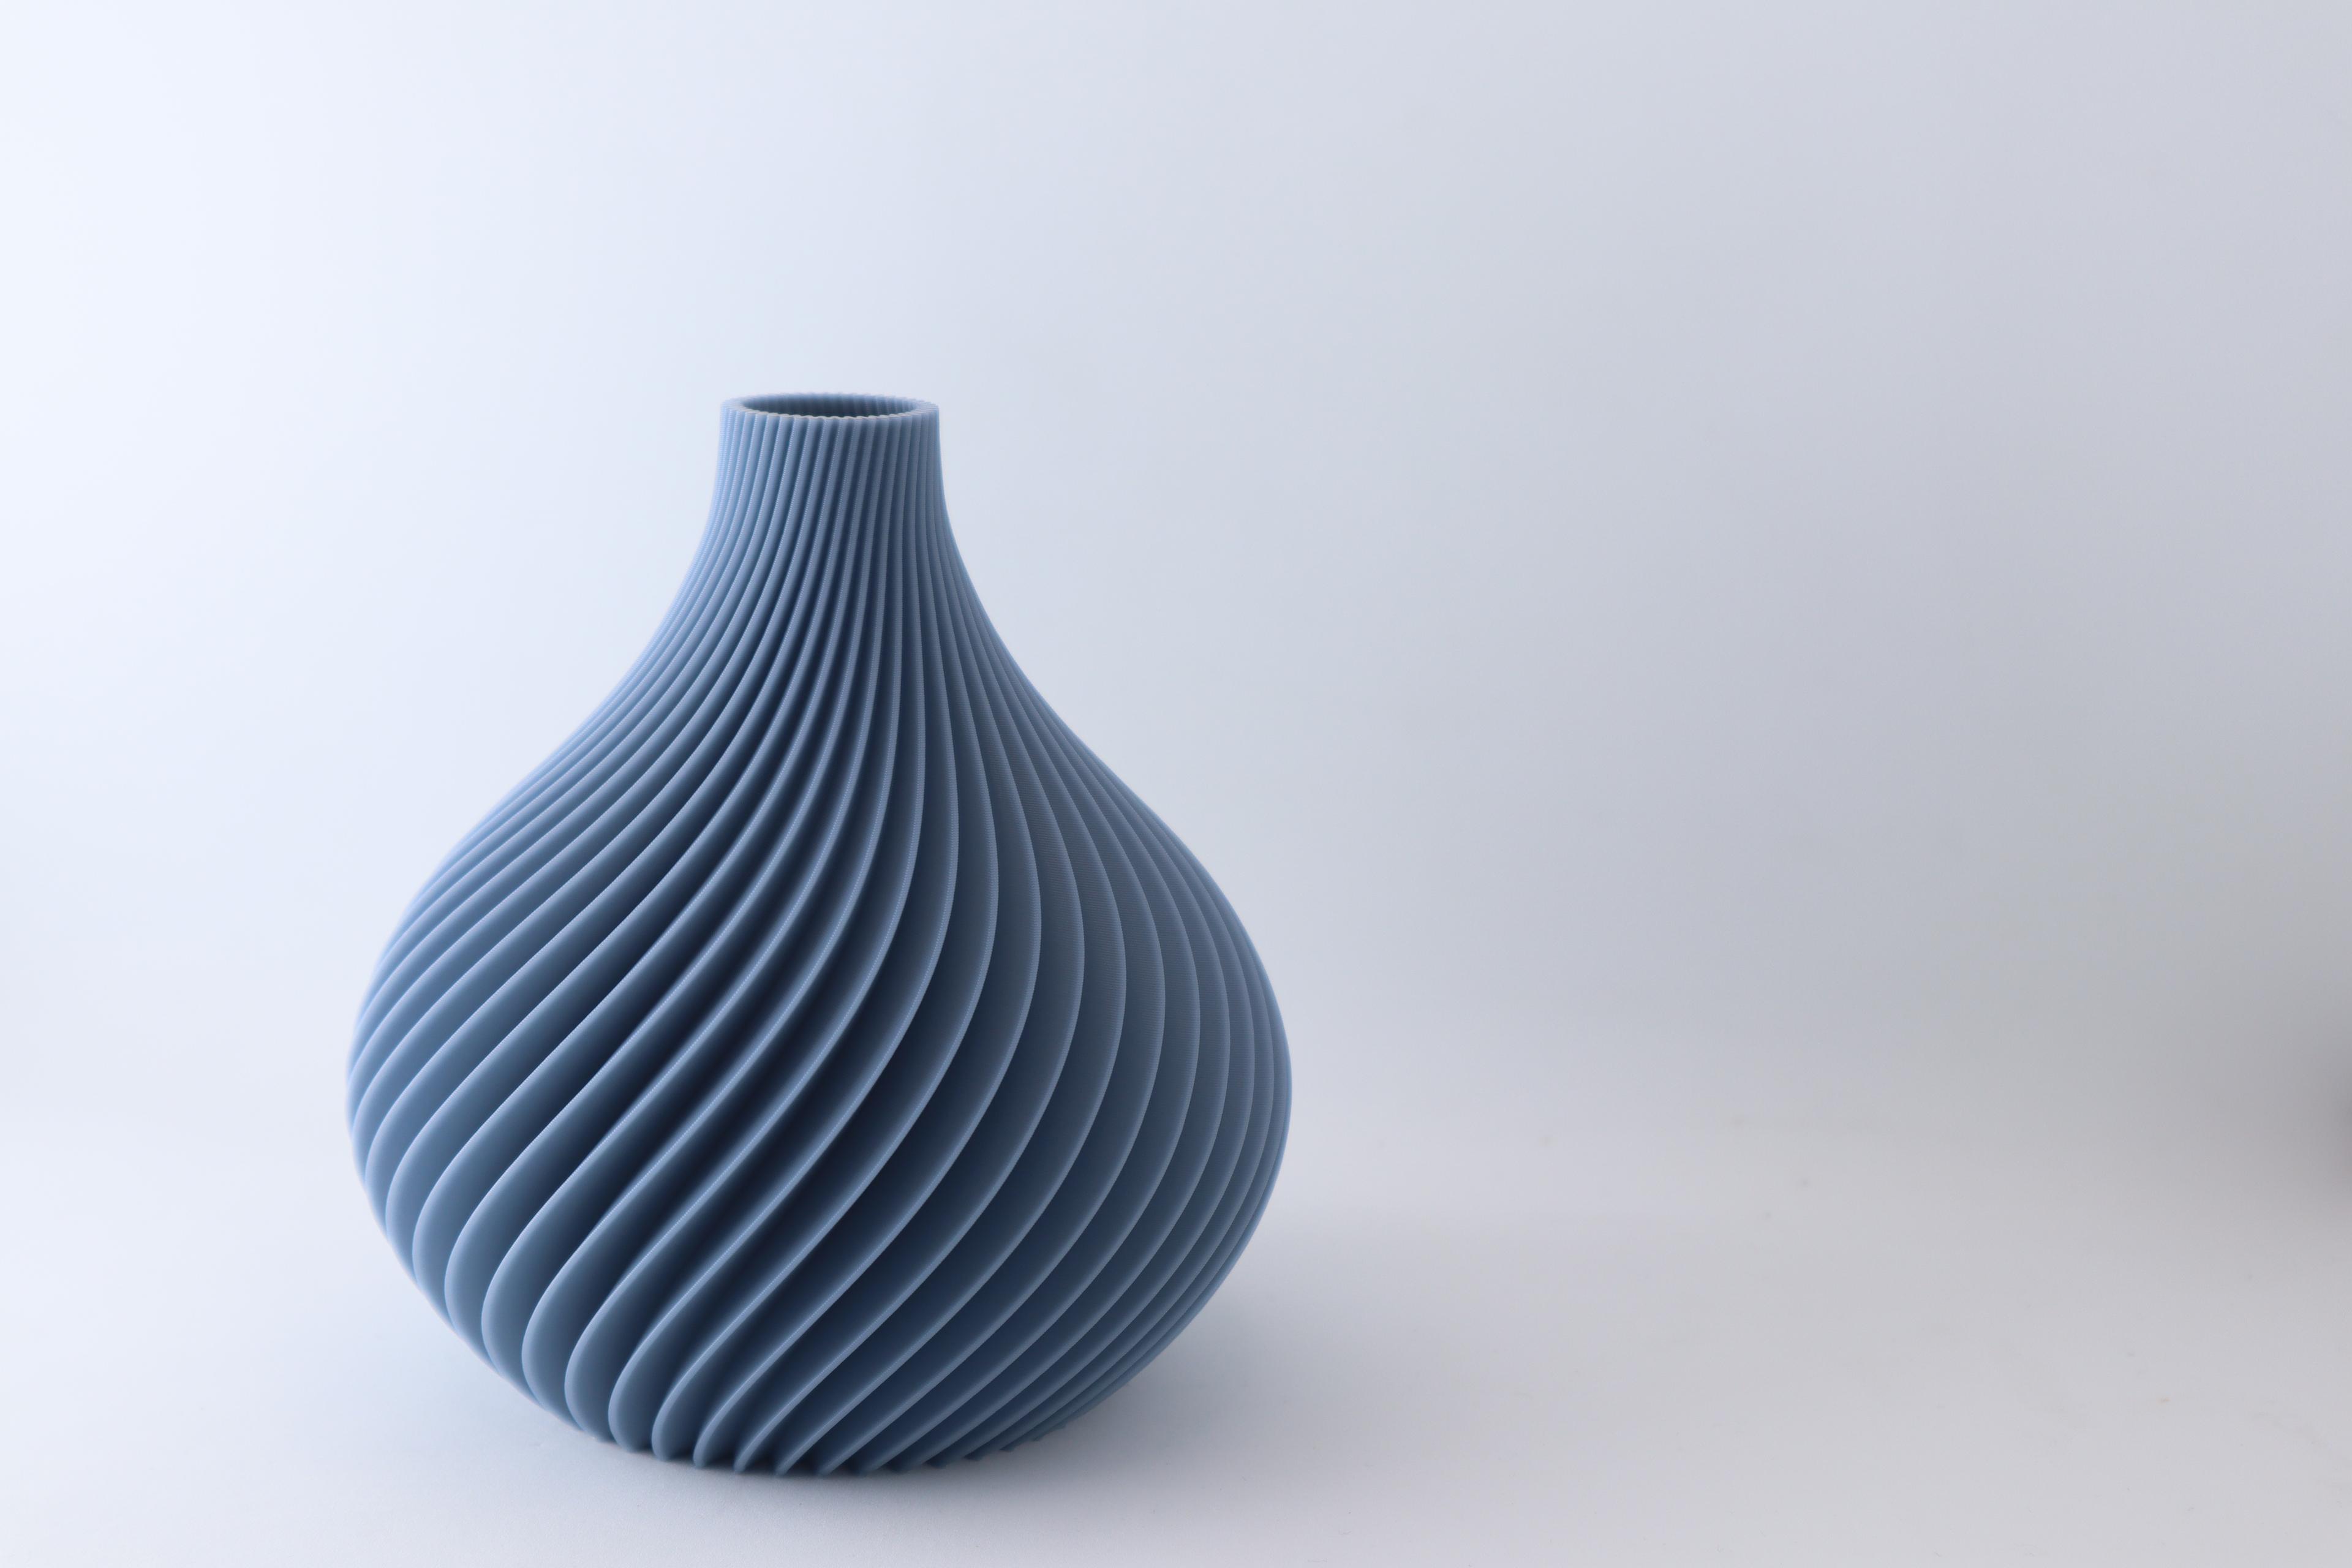 The Scand Vase 3d model